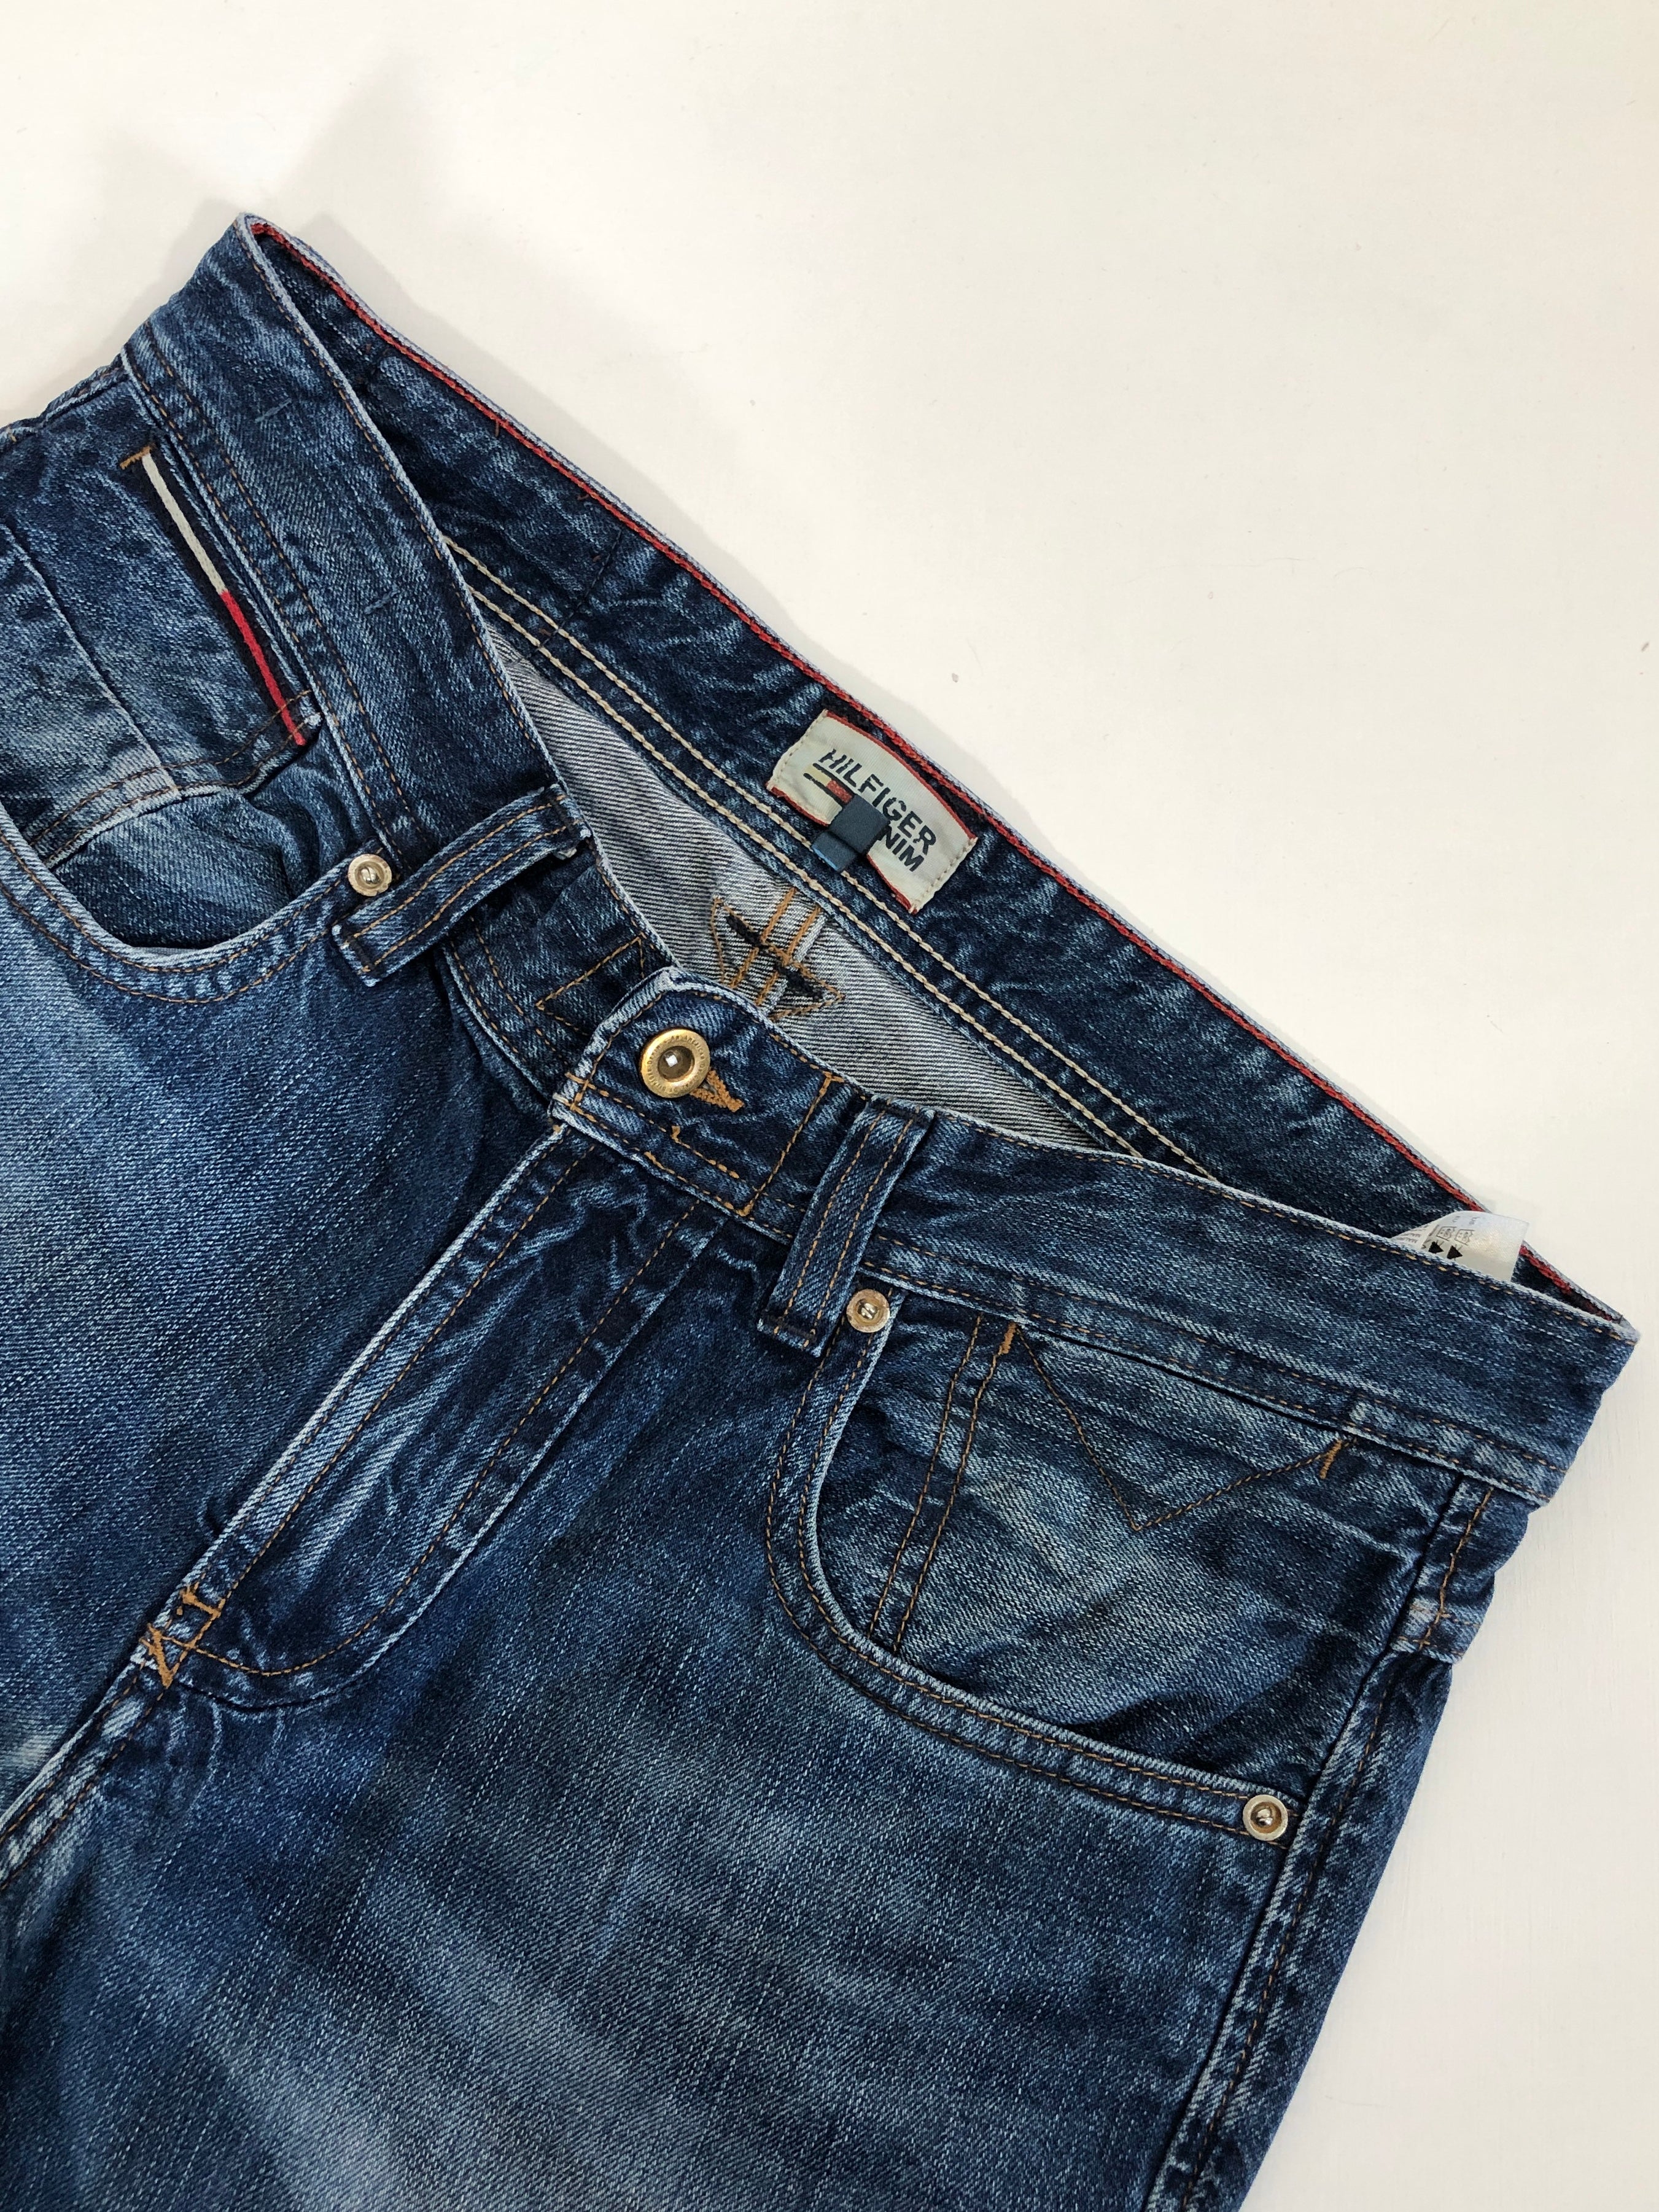 Jeans vintage Tommy Hilfiger blu tg 32